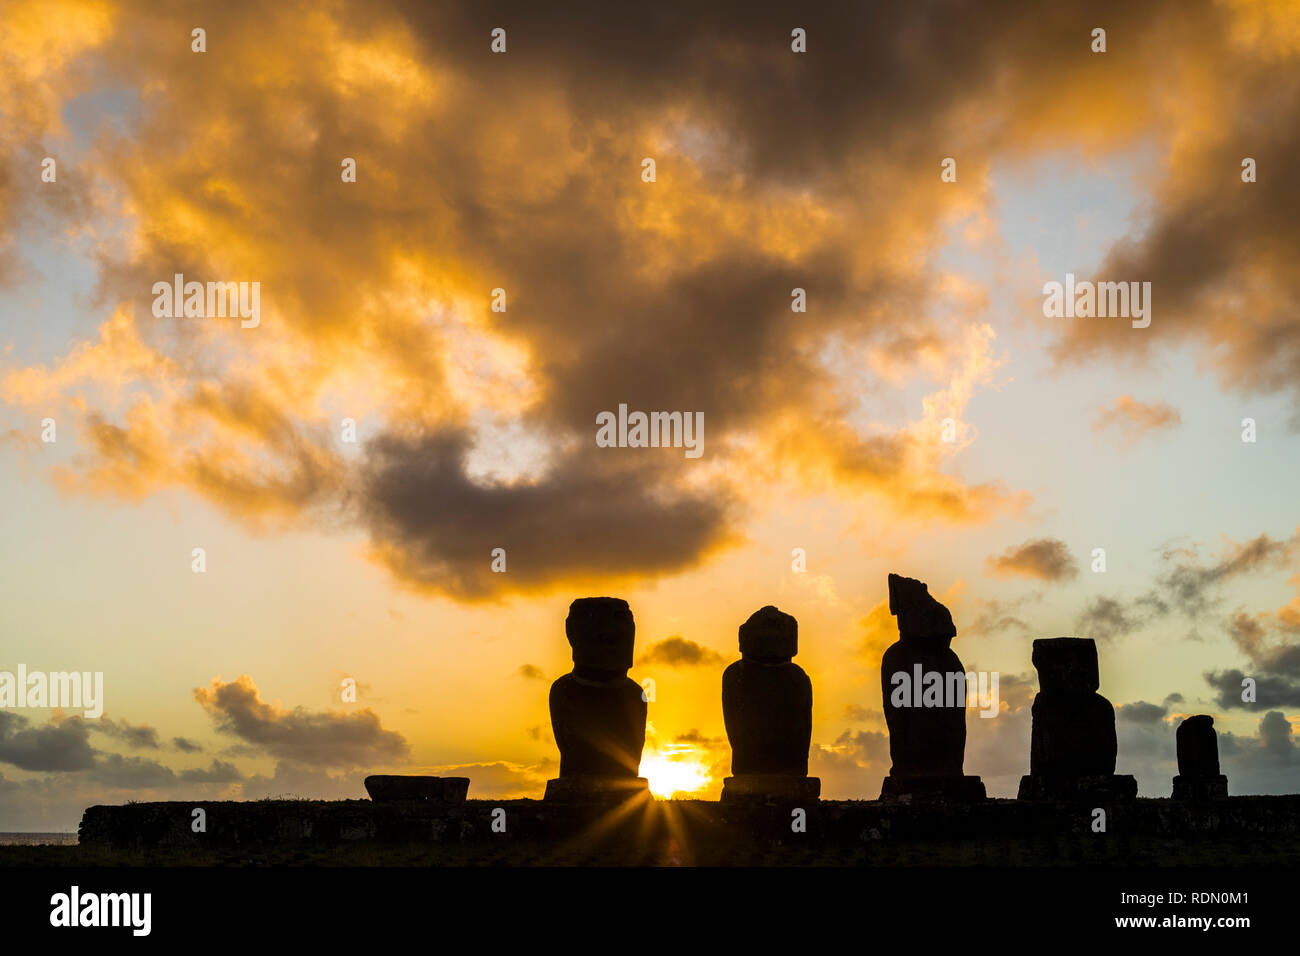 Ahu Vai Uri il più famoso tramonto all'Isola di Pasqua. Non dobbiamo confondere con Ahu Tahai che è il prossimo da soli Moai. È impressionante Foto Stock